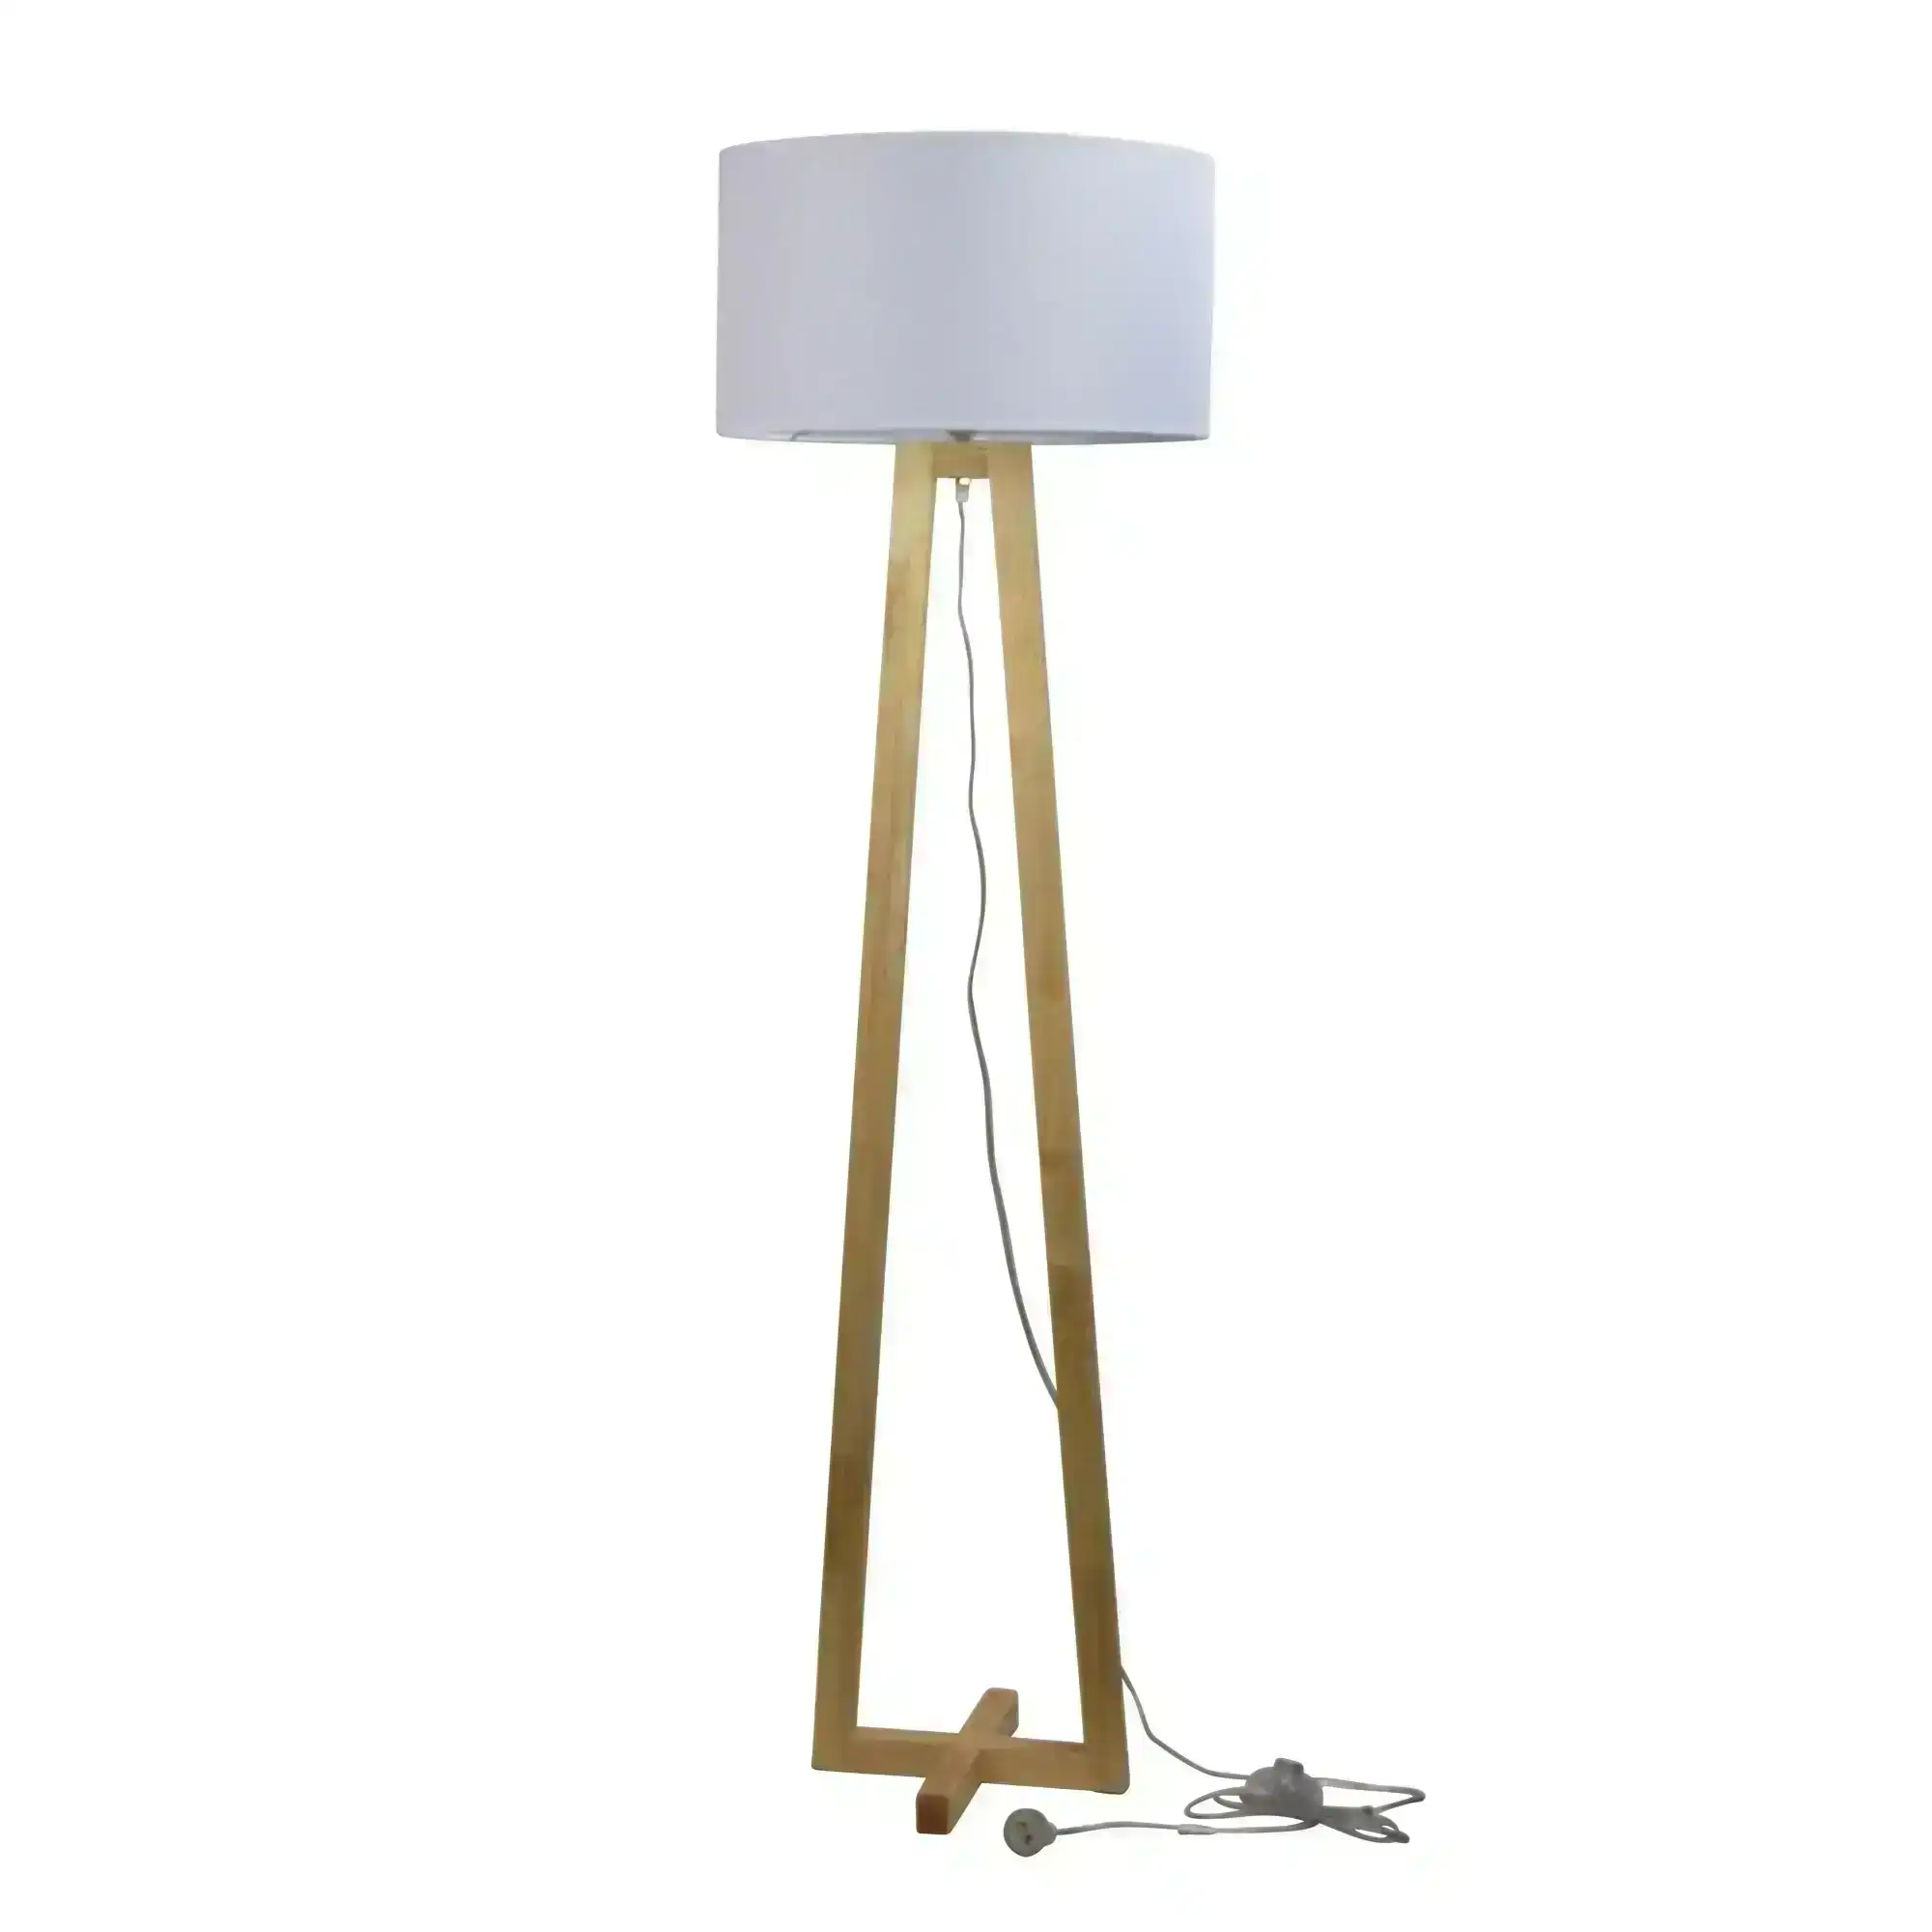 EDRA FLOOR LAMP White Scandi Floor Lamp with White Cotton Shade